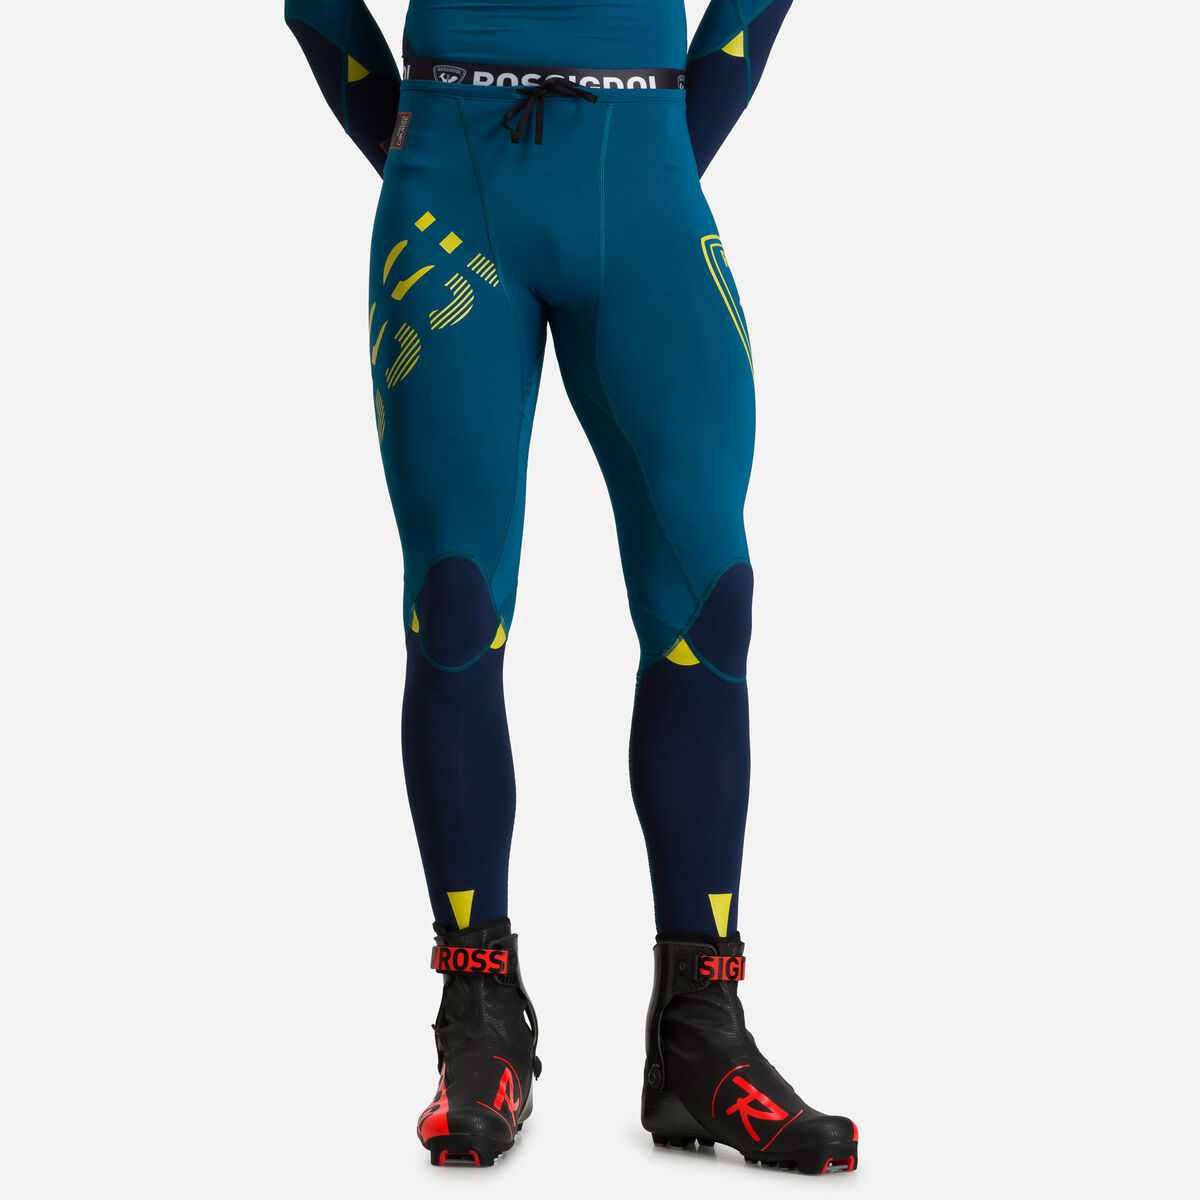 Rossignol INFINI COMPRESSION RACE TIGHTS kompresní kalhoty na běžky RLIMU03  734 